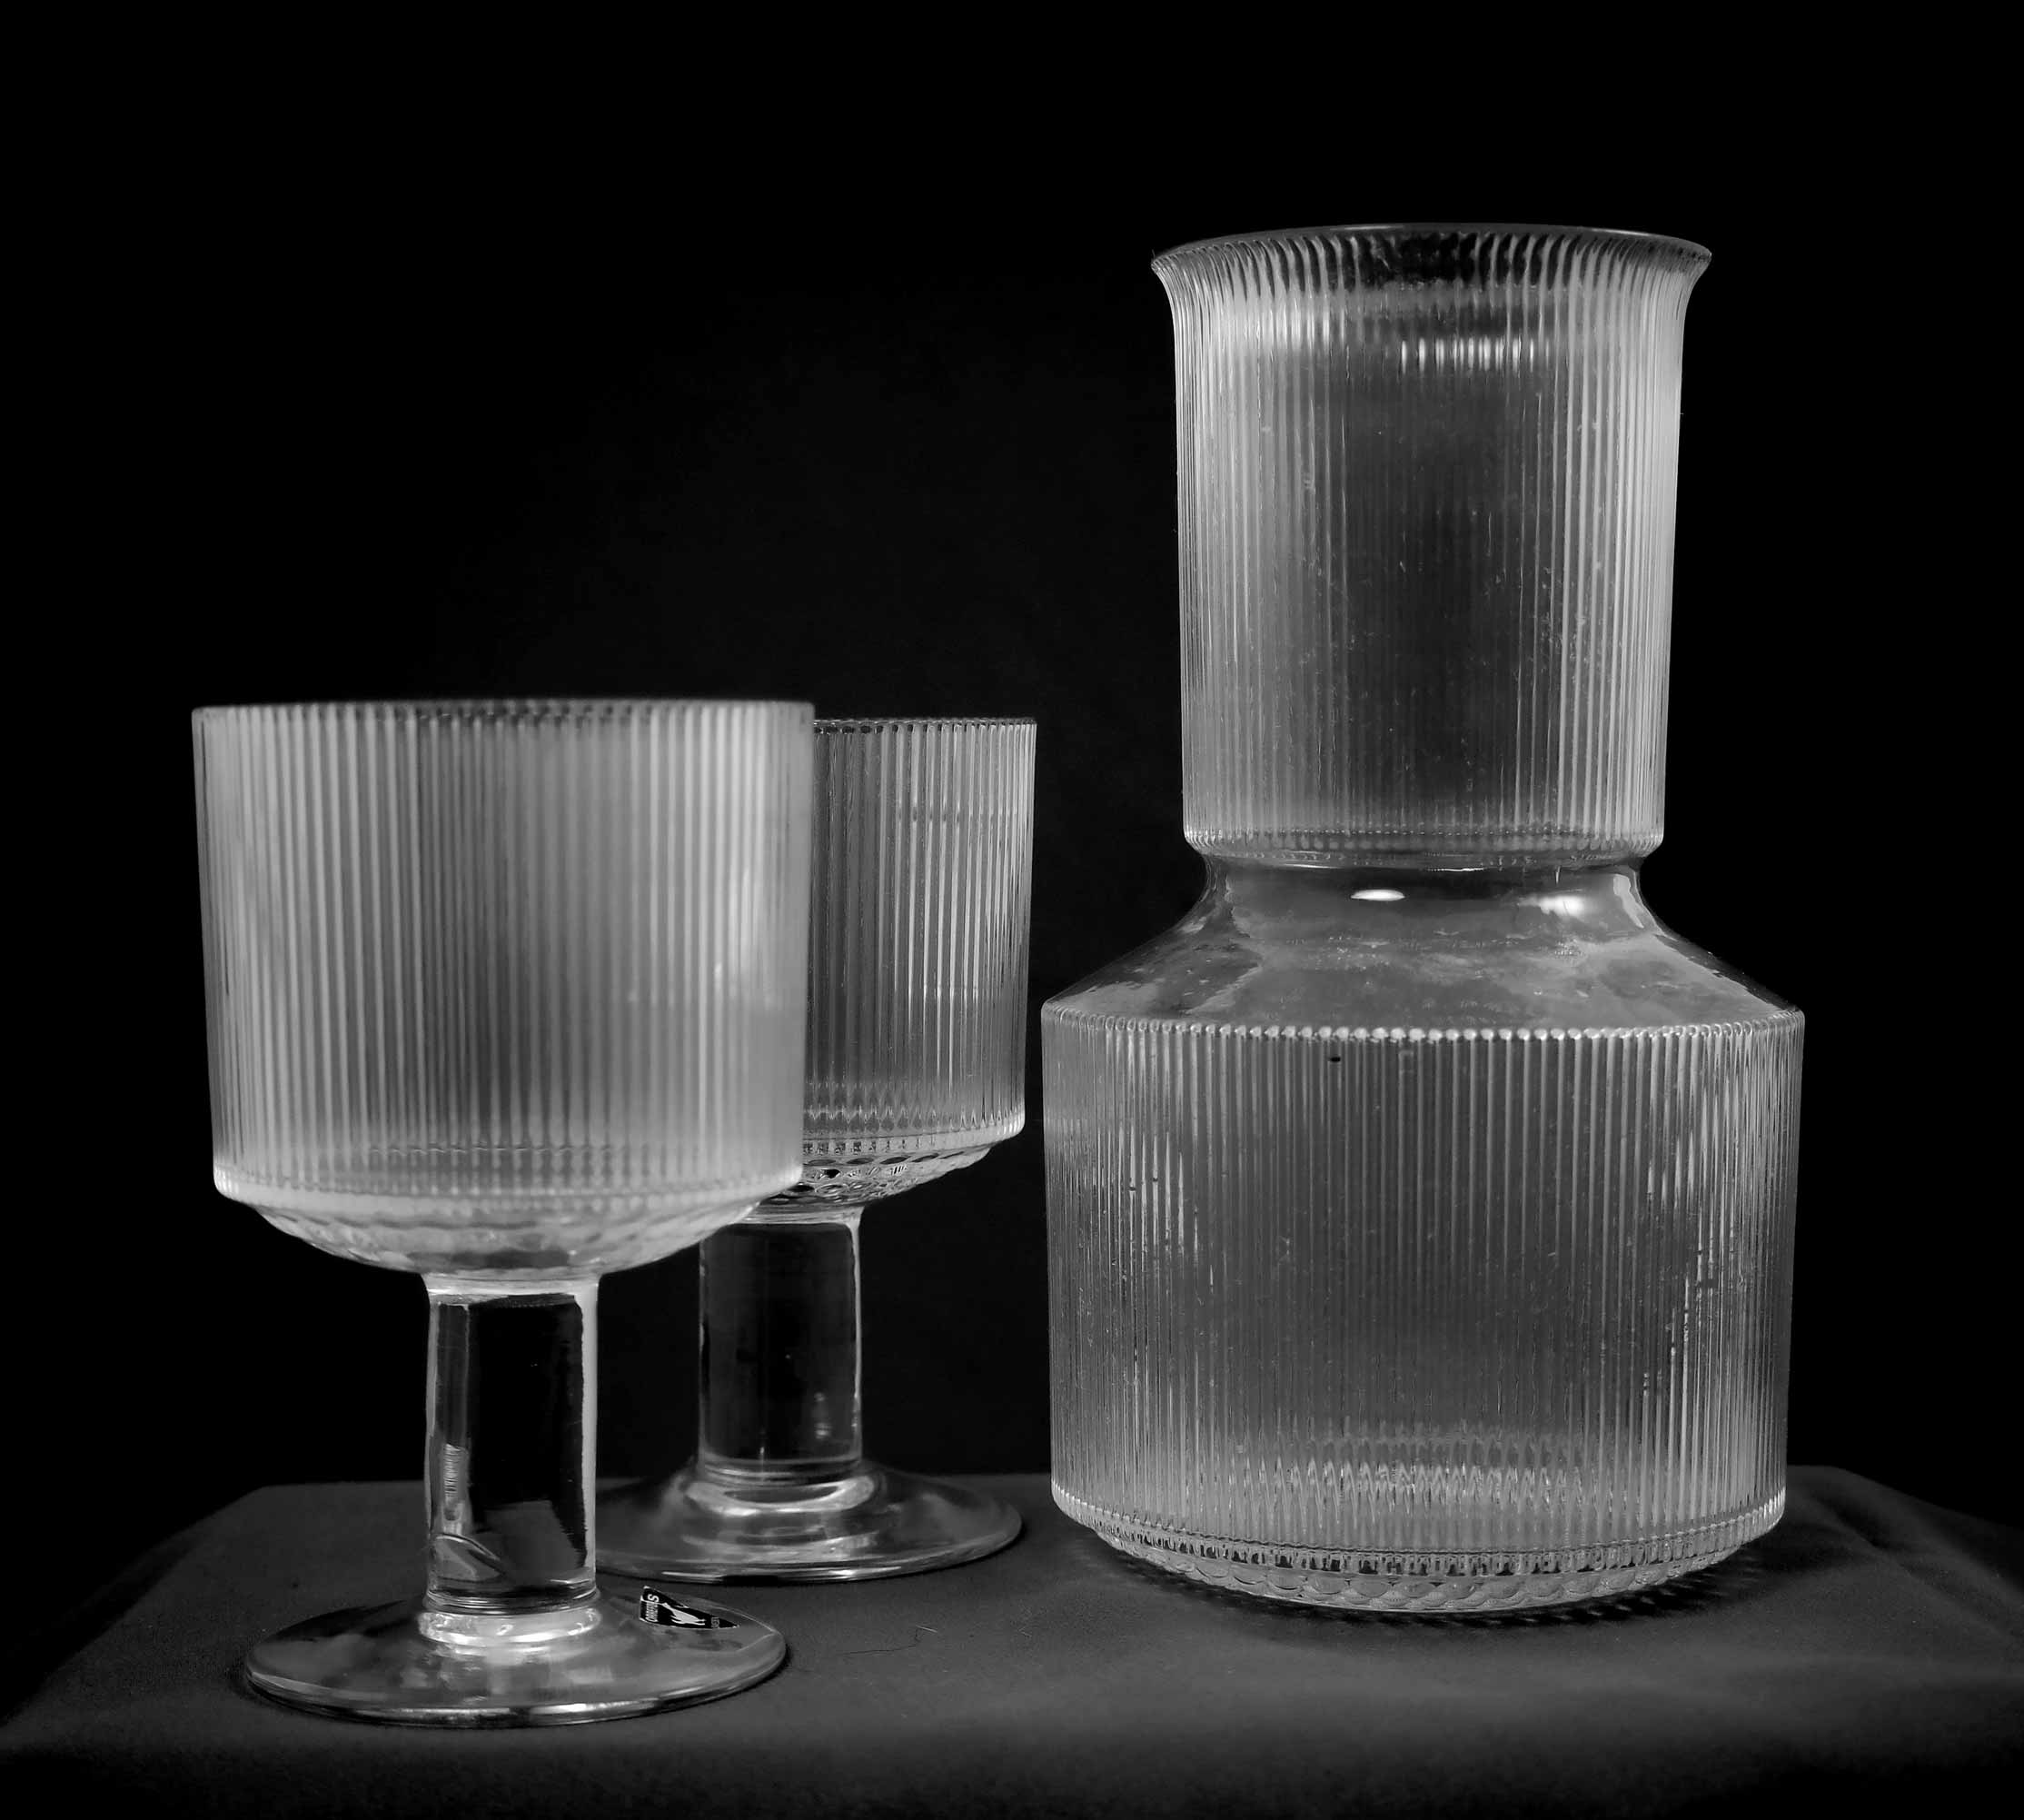 Servisglas "Artic" fastblåst i stålform, 1968